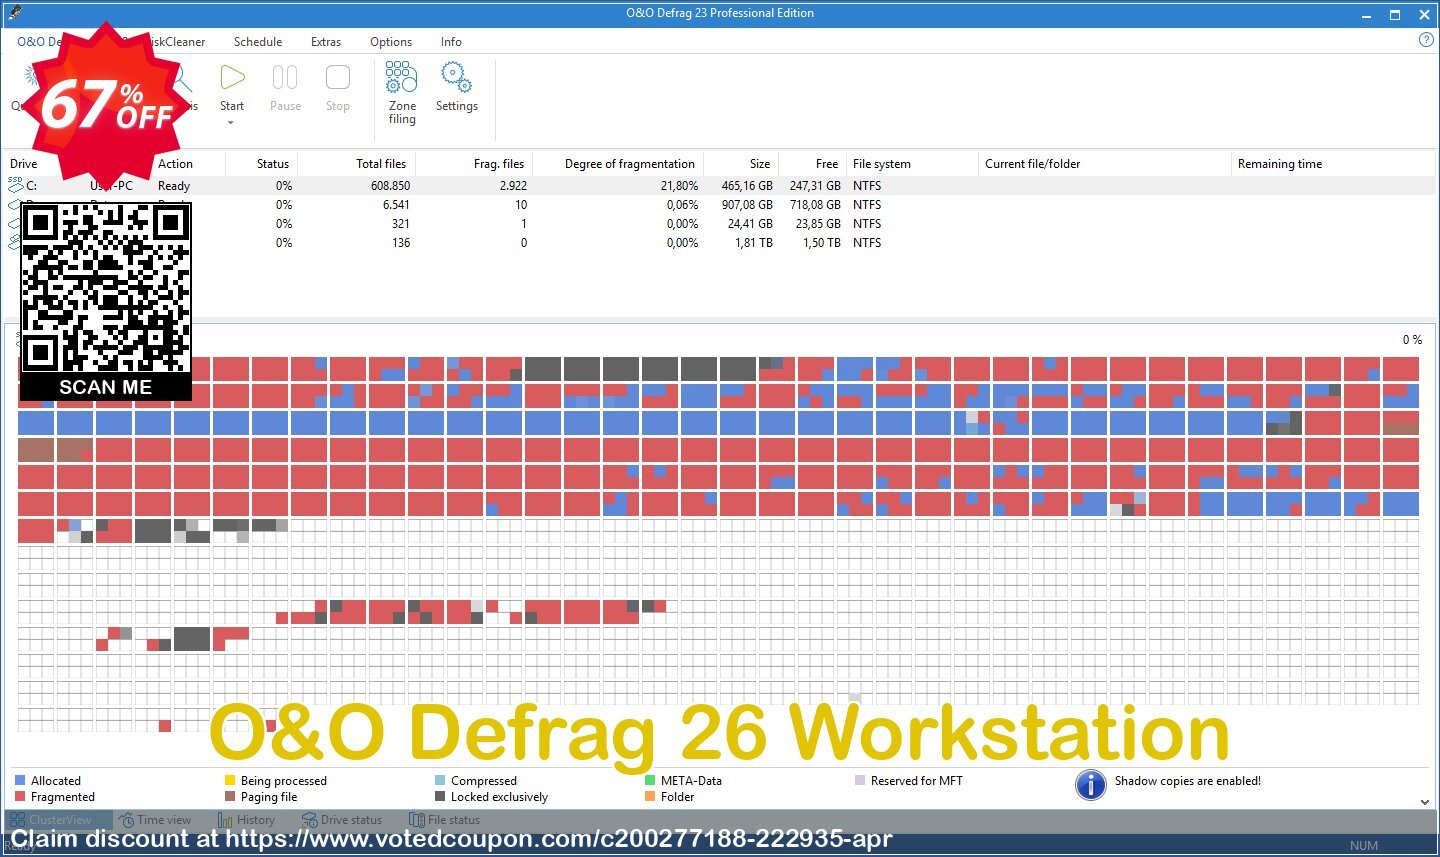 O&O Defrag 26 Workstation Coupon, discount 65% OFF O&O Defrag 25 Workstation, verified. Promotion: Big promo code of O&O Defrag 25 Workstation, tested & approved